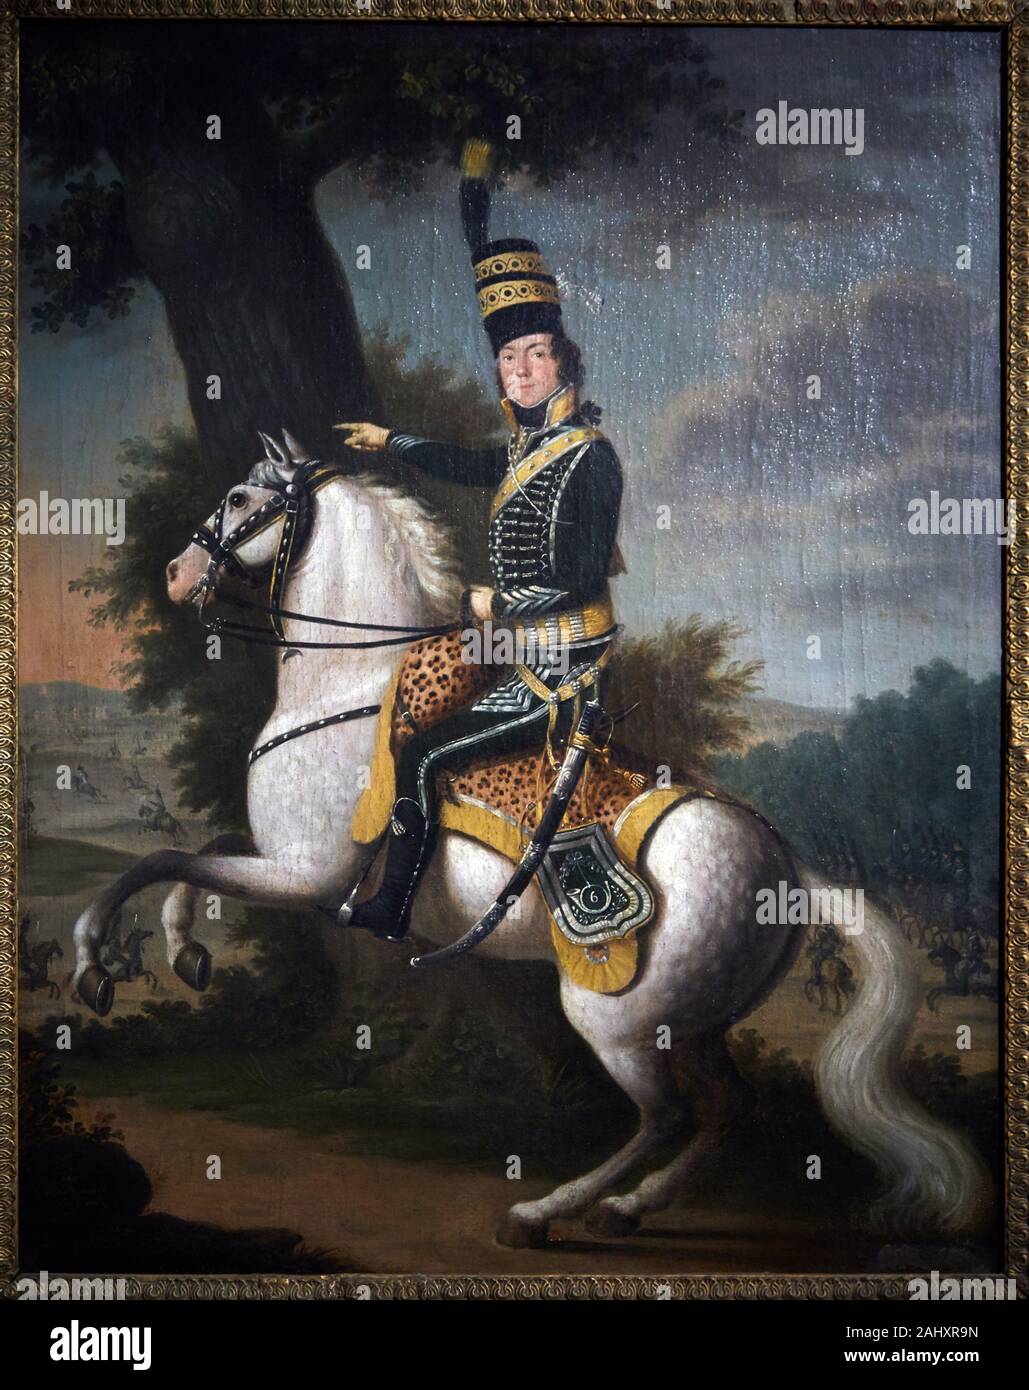 '''A 6th Chasseur Regiment Lance-Sergeant'', 1795, Johann Friedrich Dryander, Musée de l’Armée, Hôtel National des Invalides, Paris, France Stock Photo